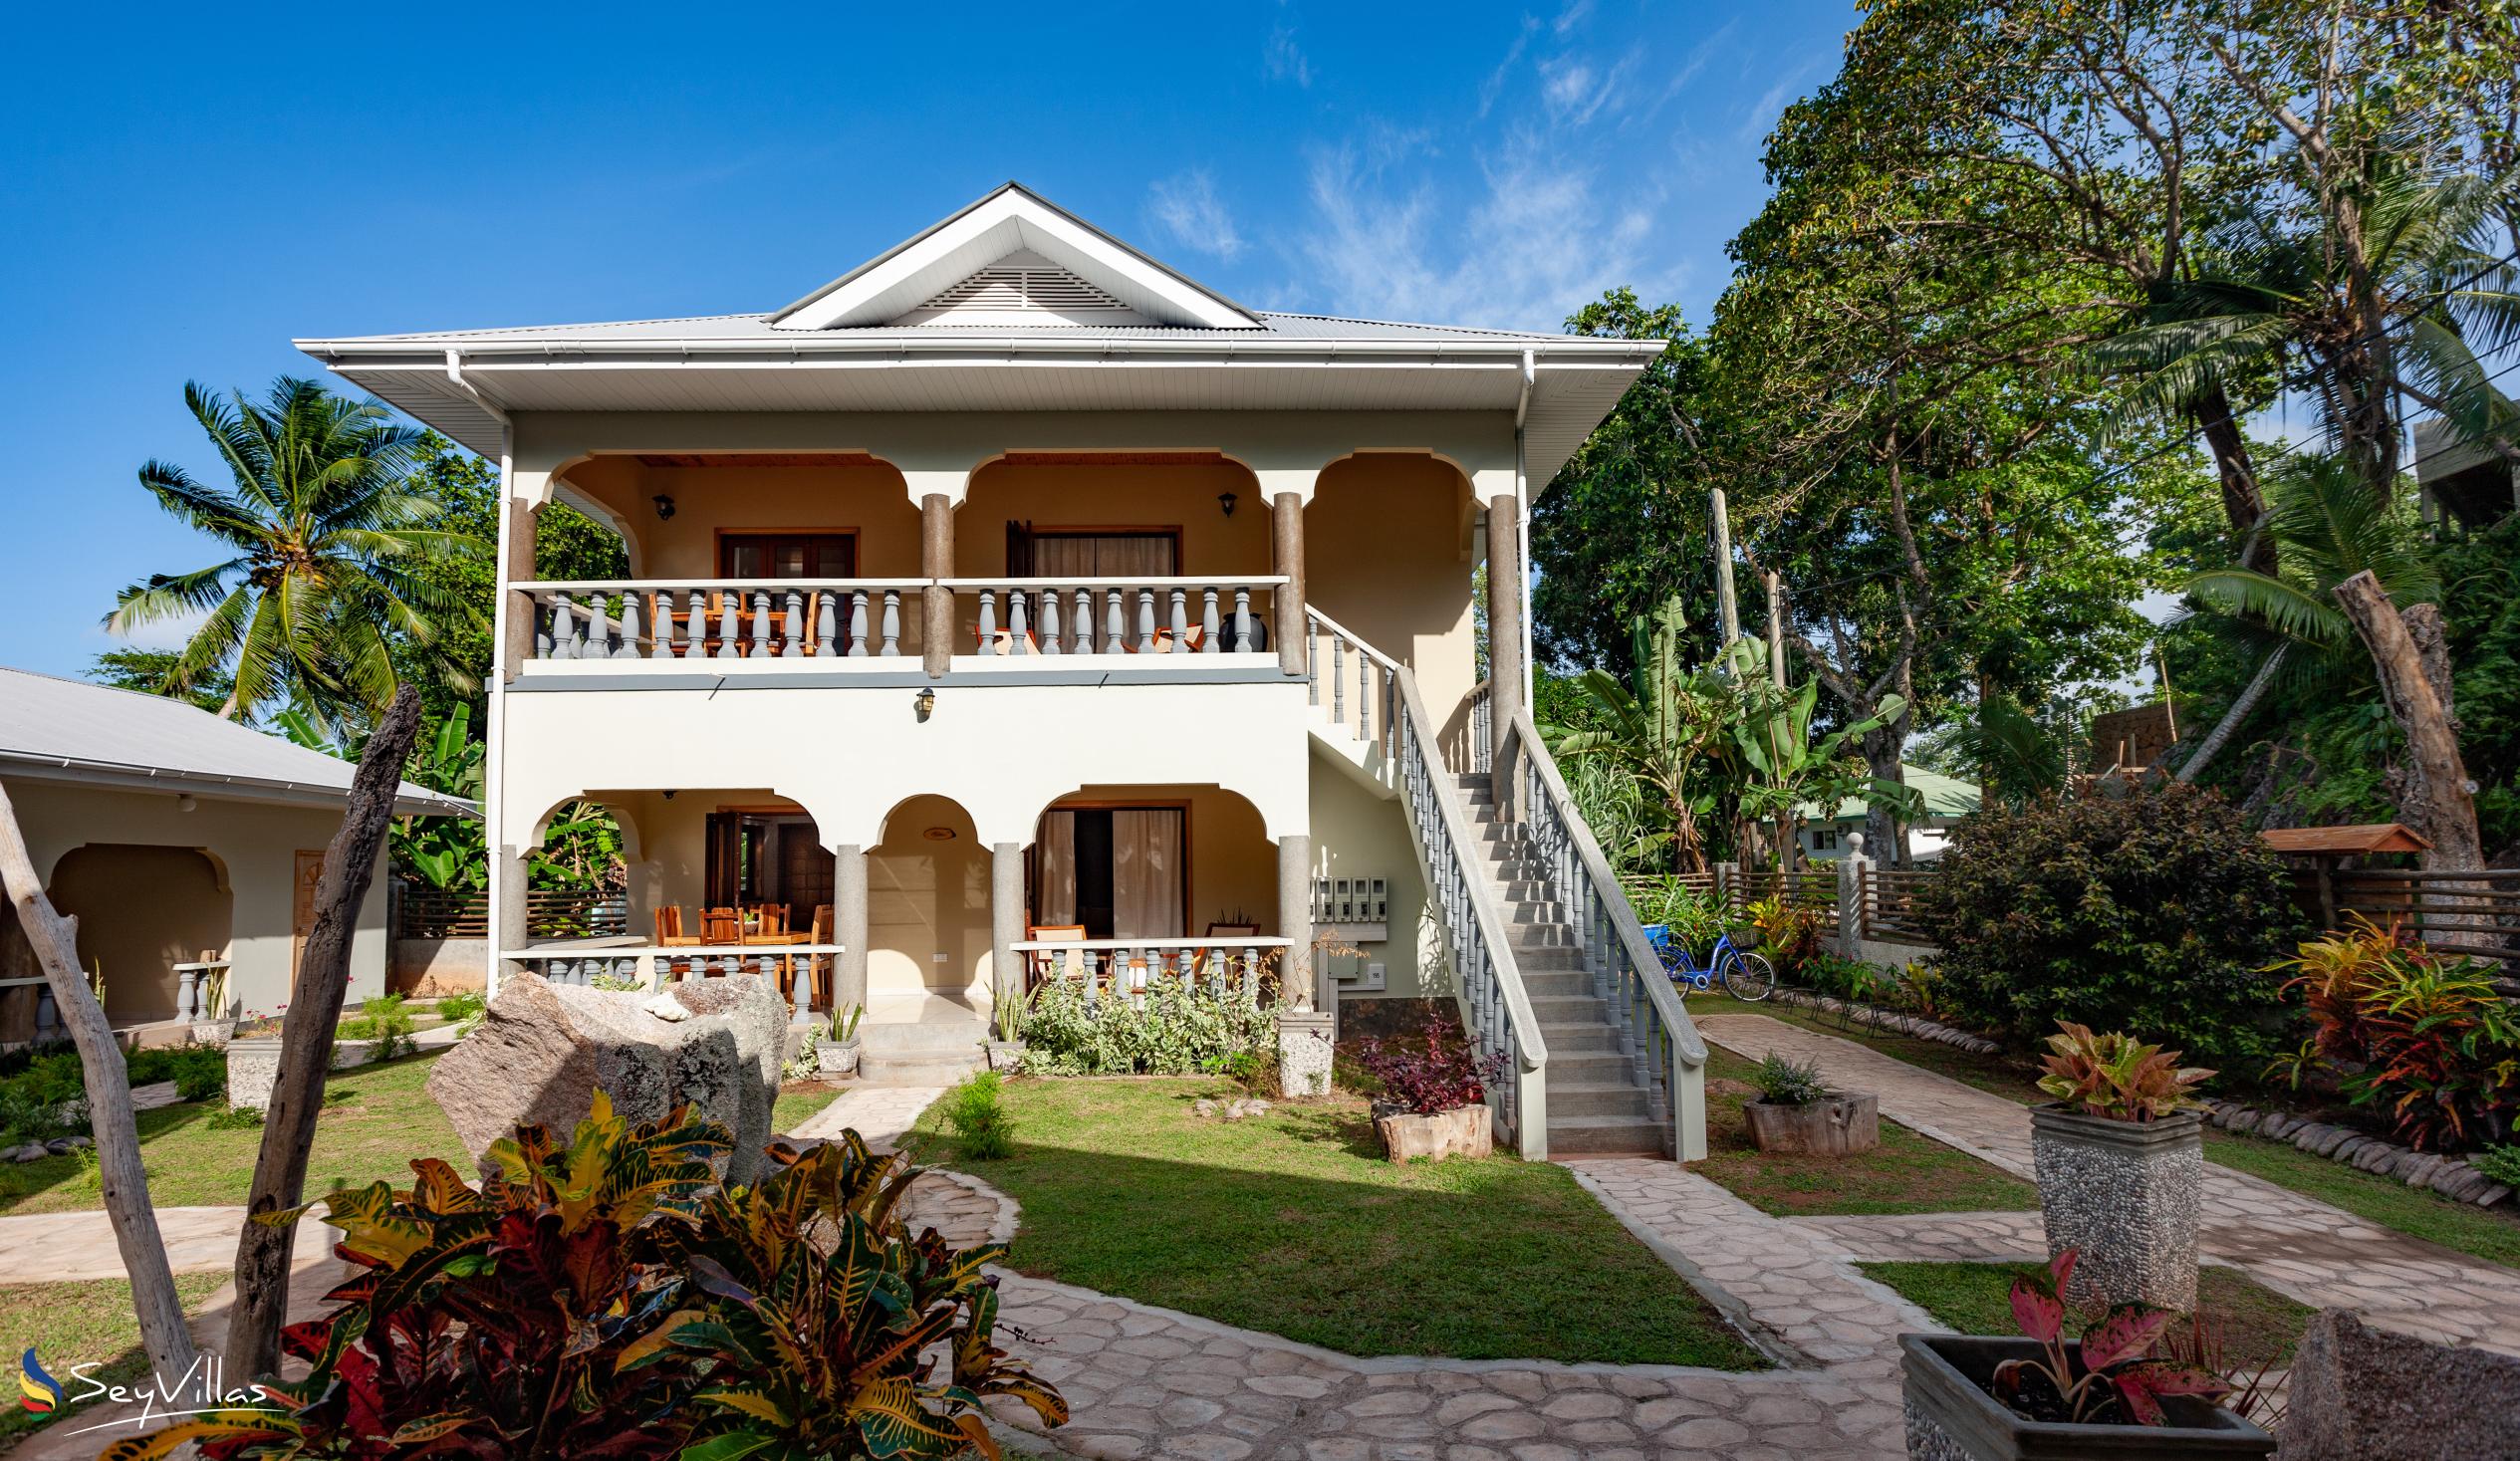 Foto 1: Maison Ed-Elle - Extérieur - La Digue (Seychelles)